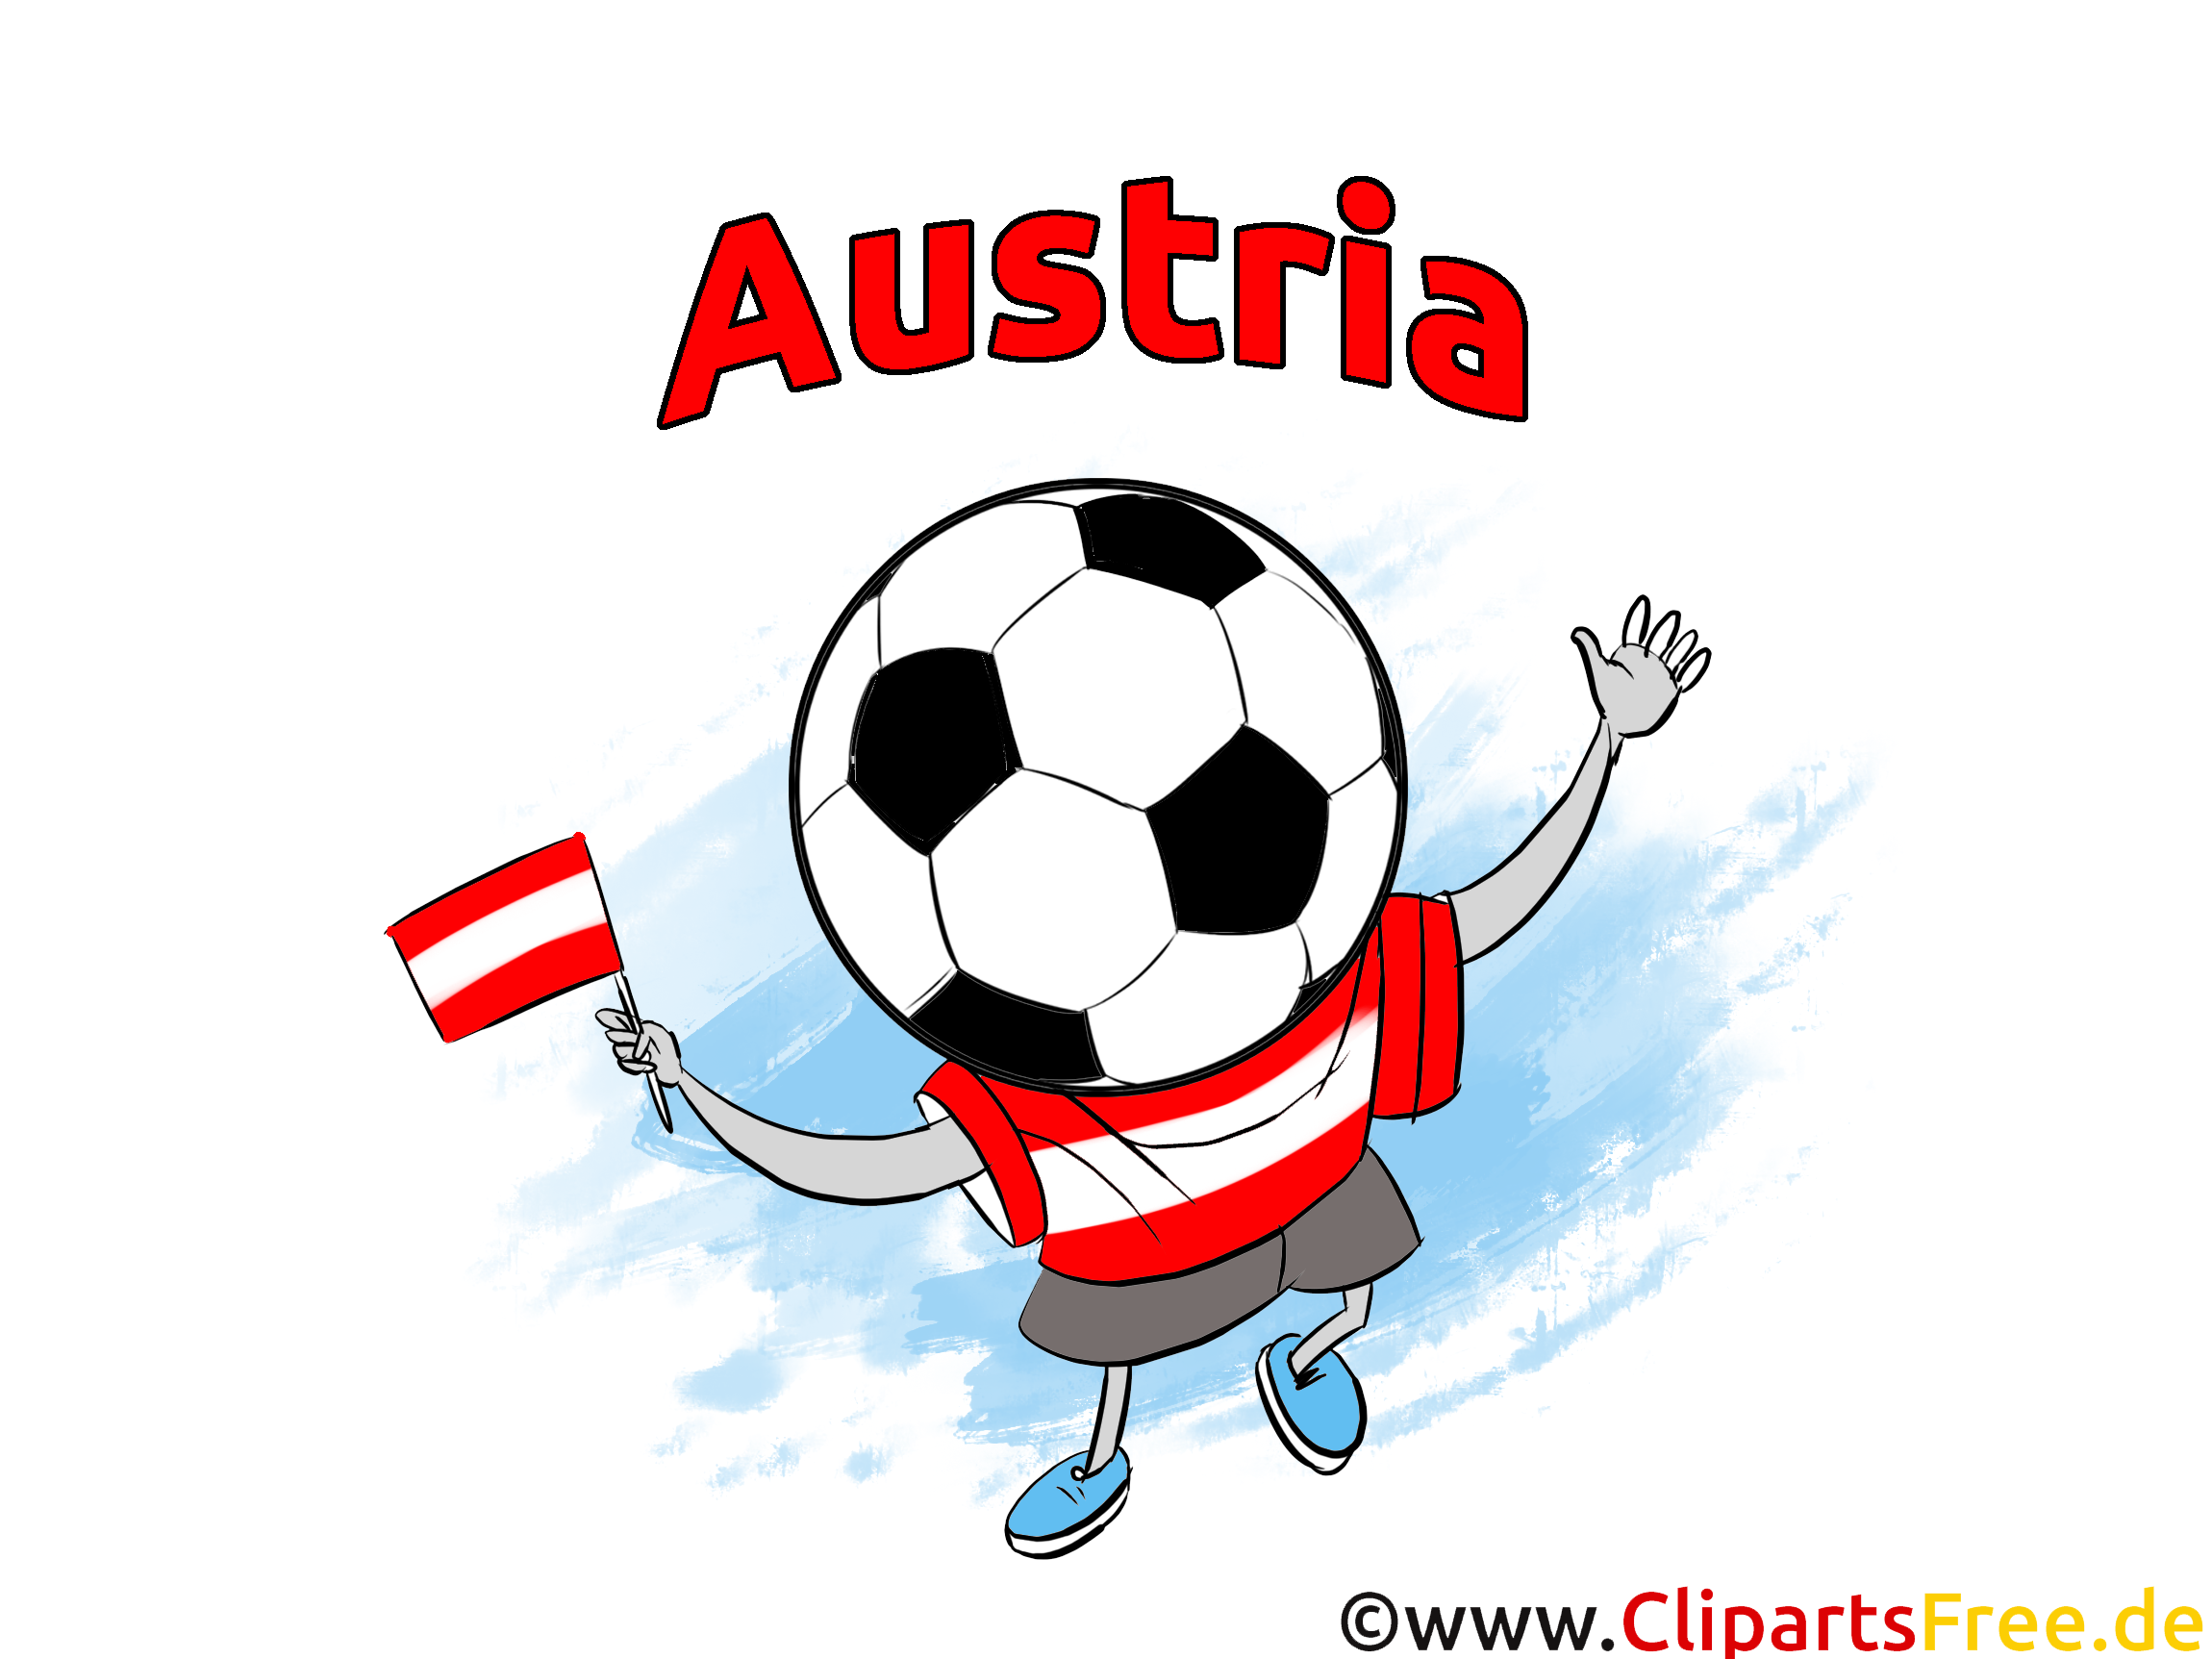 Joueur Autriche Football Soccer gratuit Image